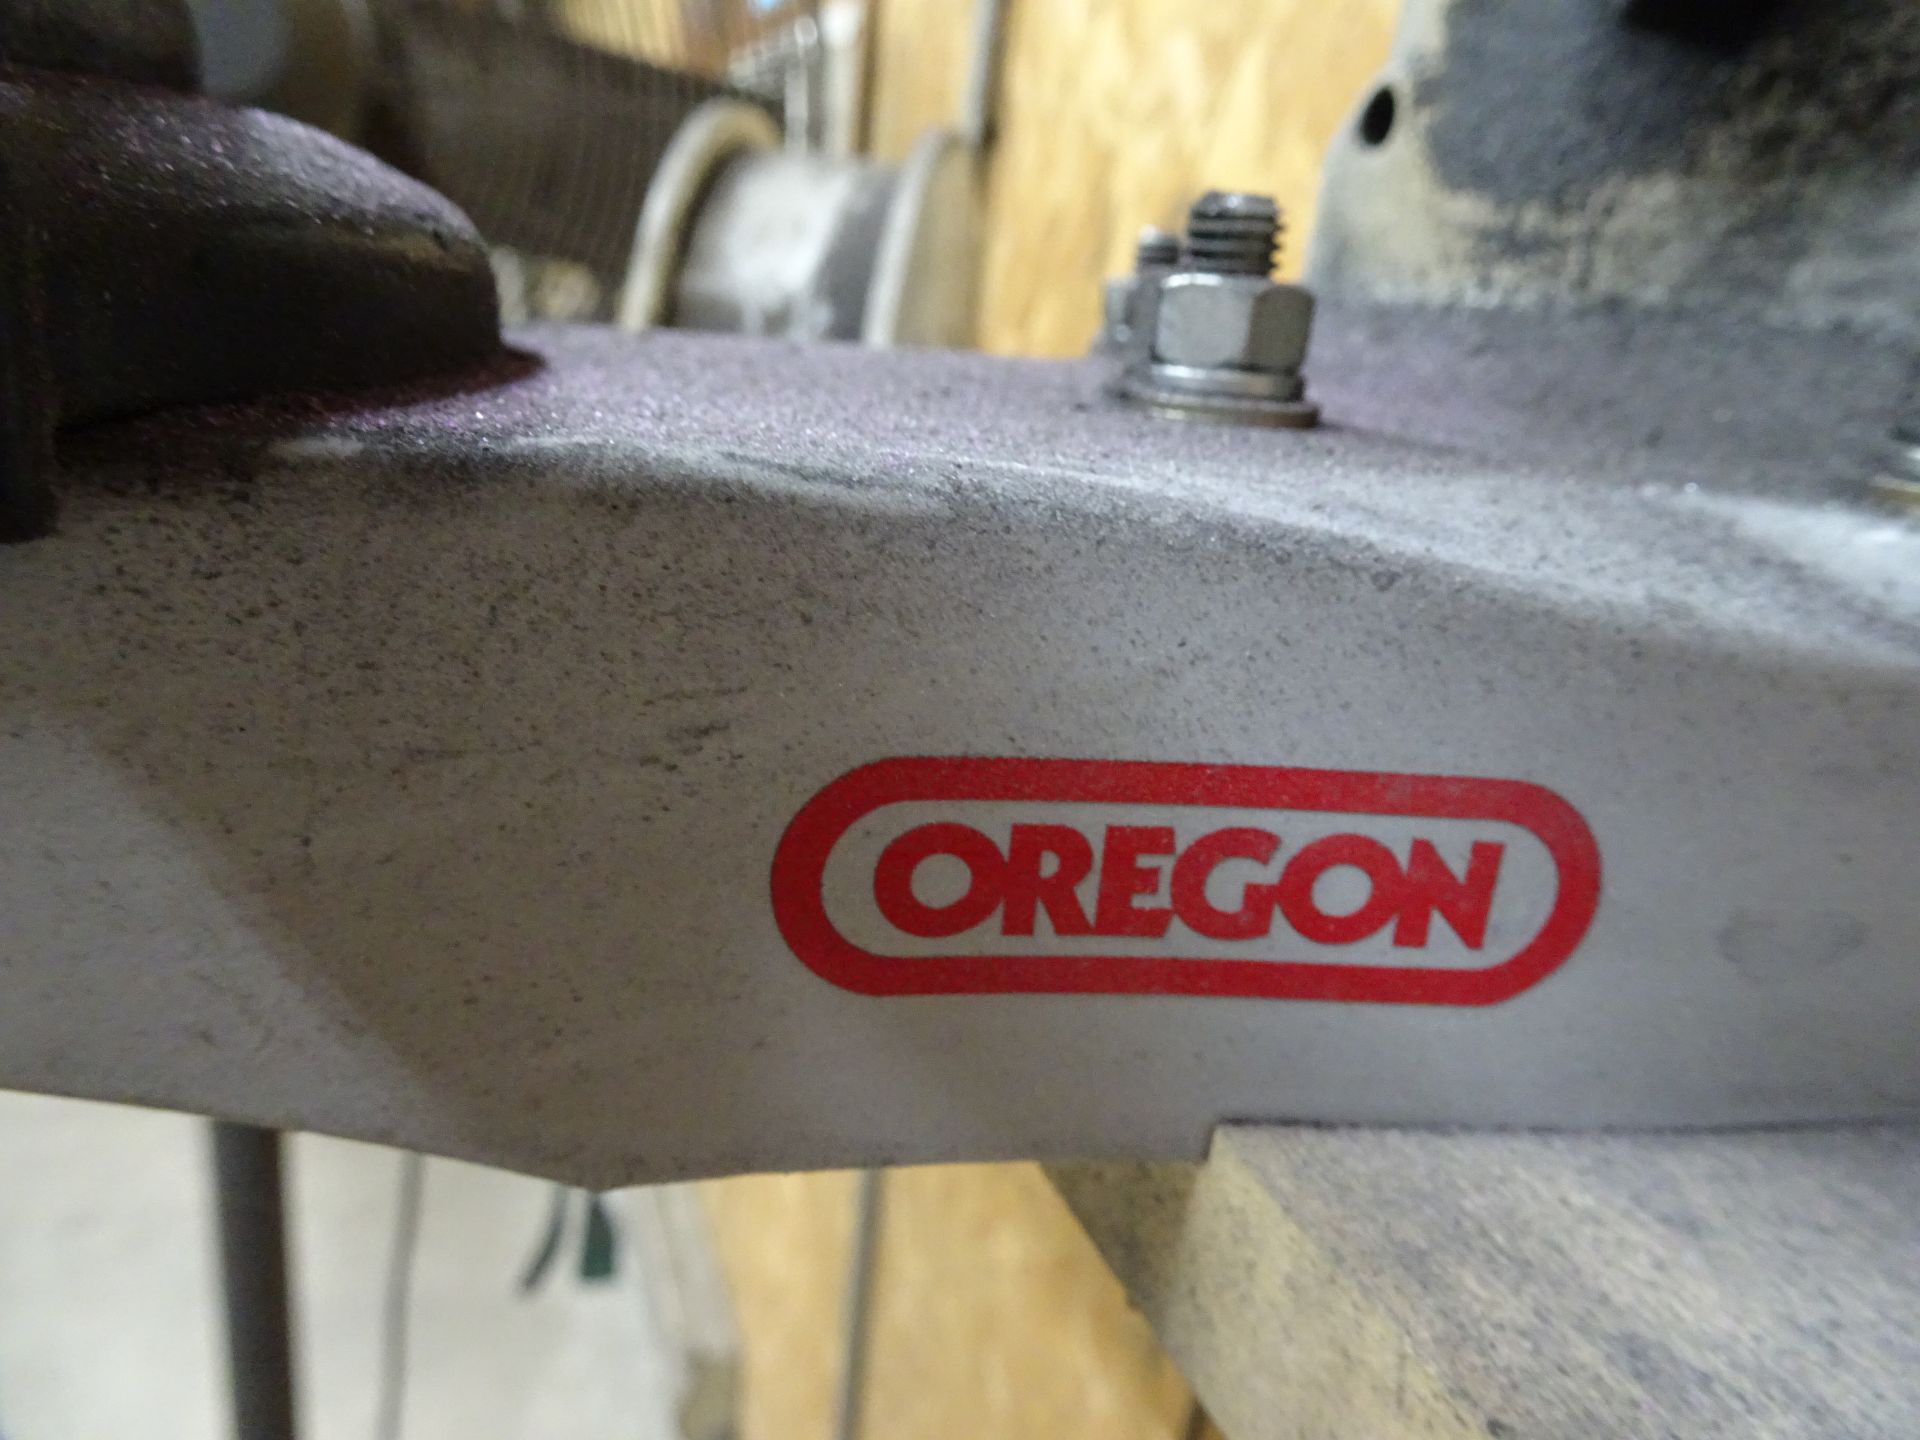 Oregon Model 520-120 Bench Grinder - Image 3 of 4